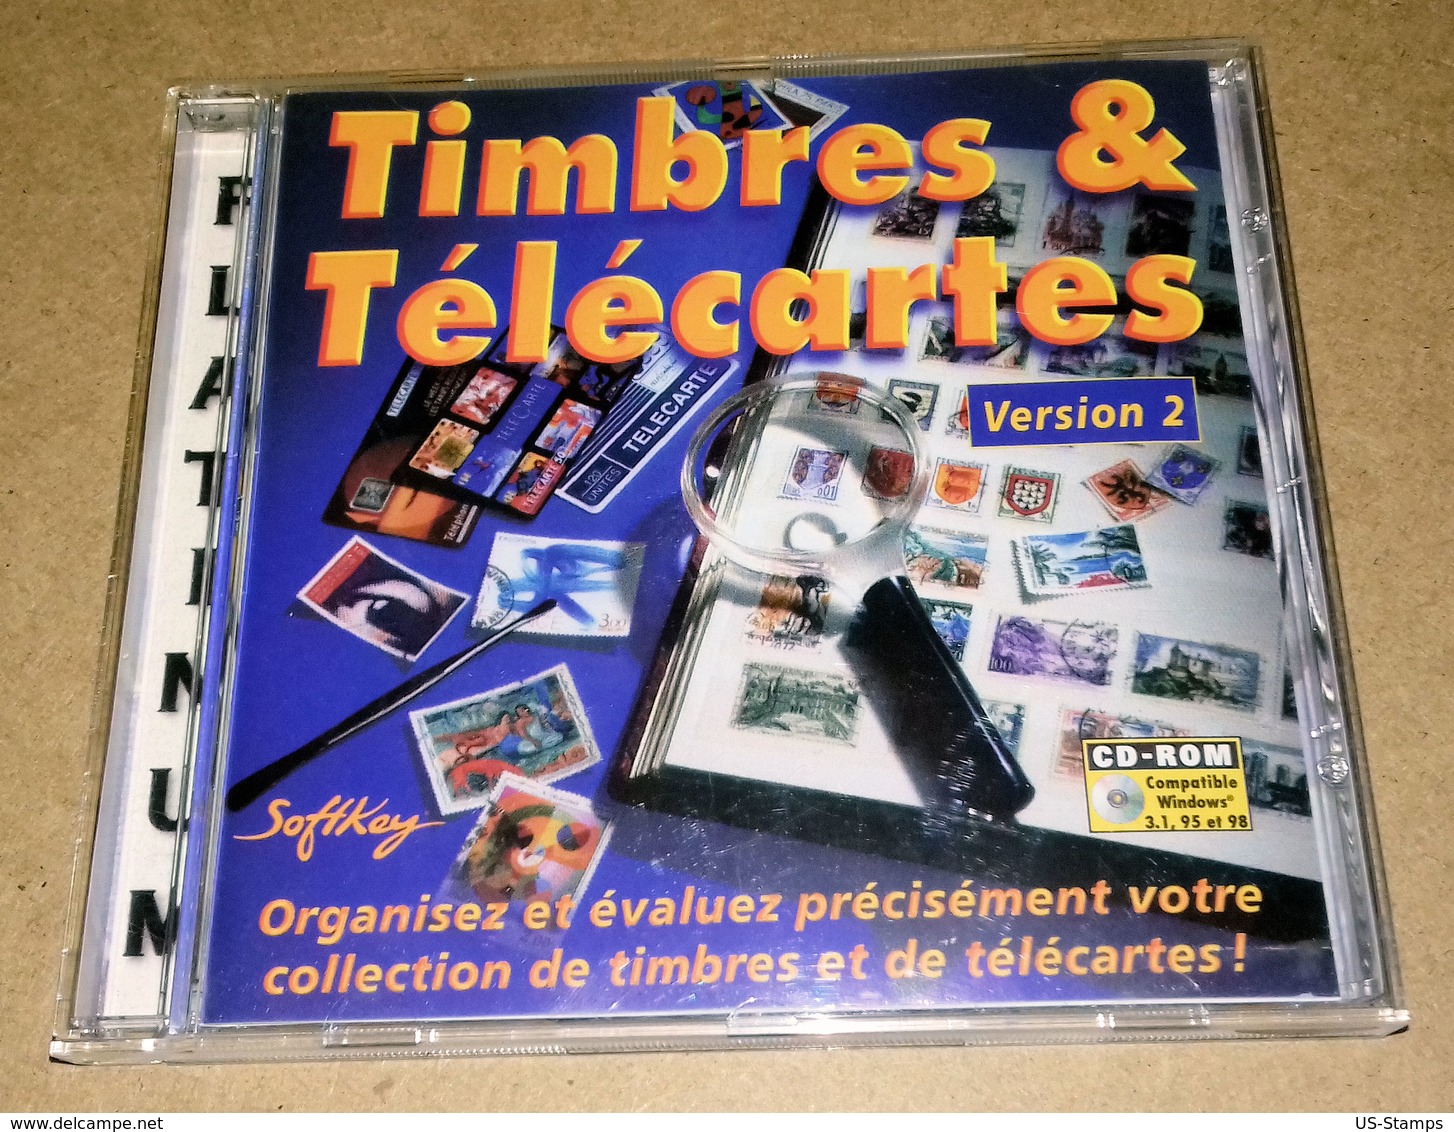 CD Timbres Et Télécartes Version 2 (SoftKey) - Francés